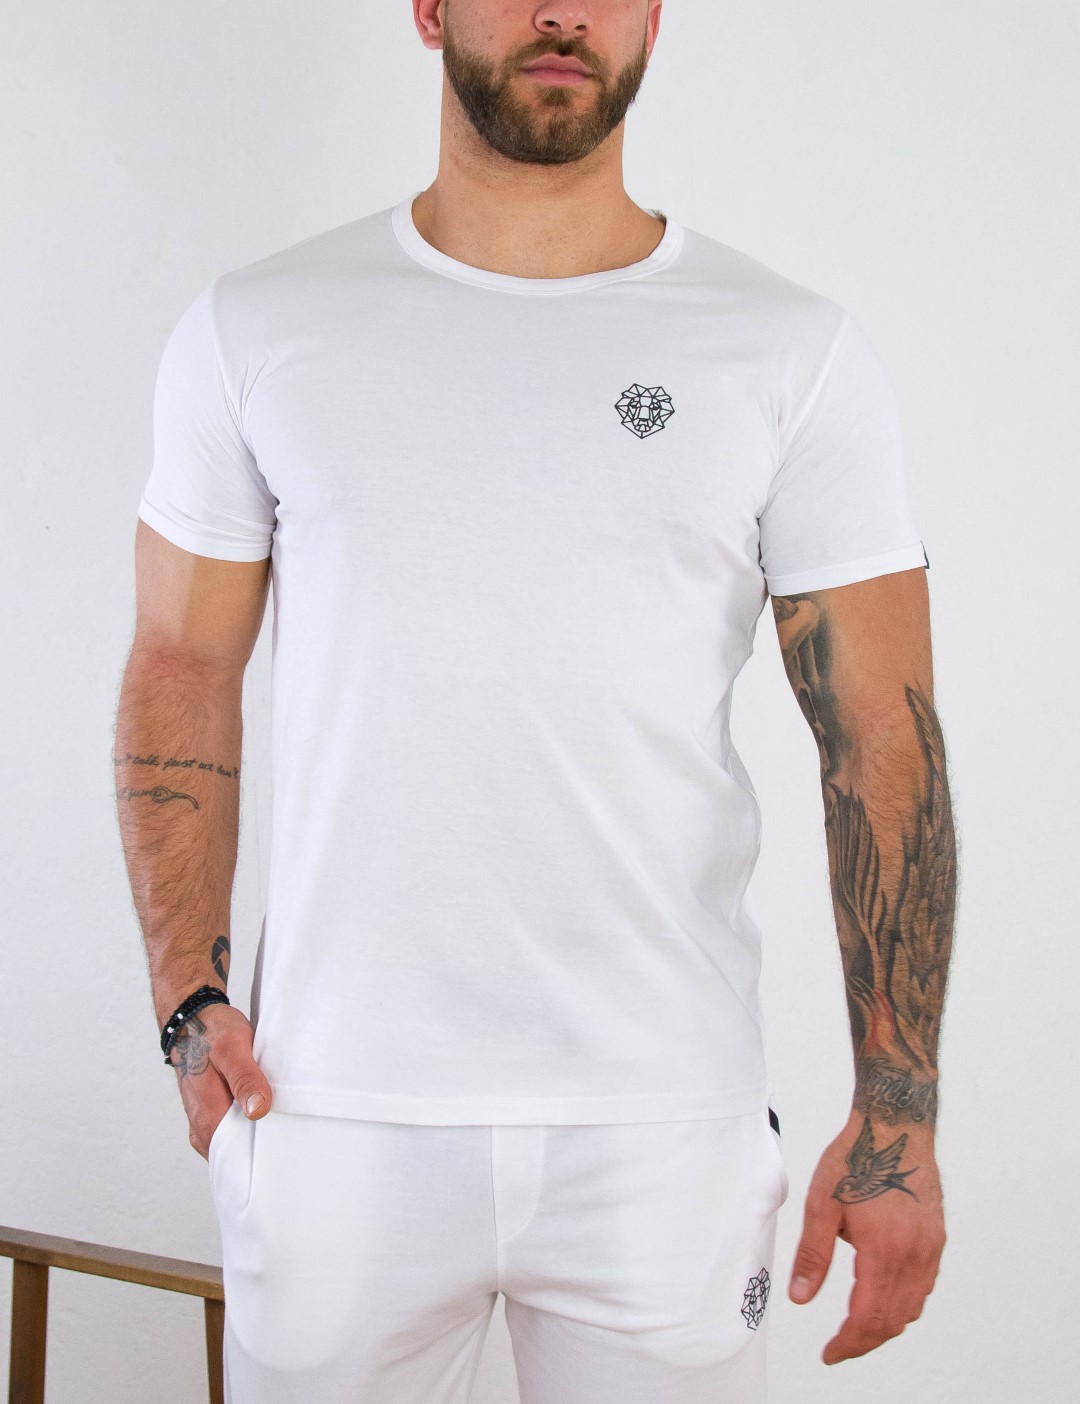 ΑΝΔΡΑΣ > ΑΝΔΡΙΚΑ ΡΟΥΧΑ > ΜΠΛΟΥΖΕΣ > T-Shirt Ανδρικό λευκό βαμβακερό T-shirt με σχέδιο Martini 70677L